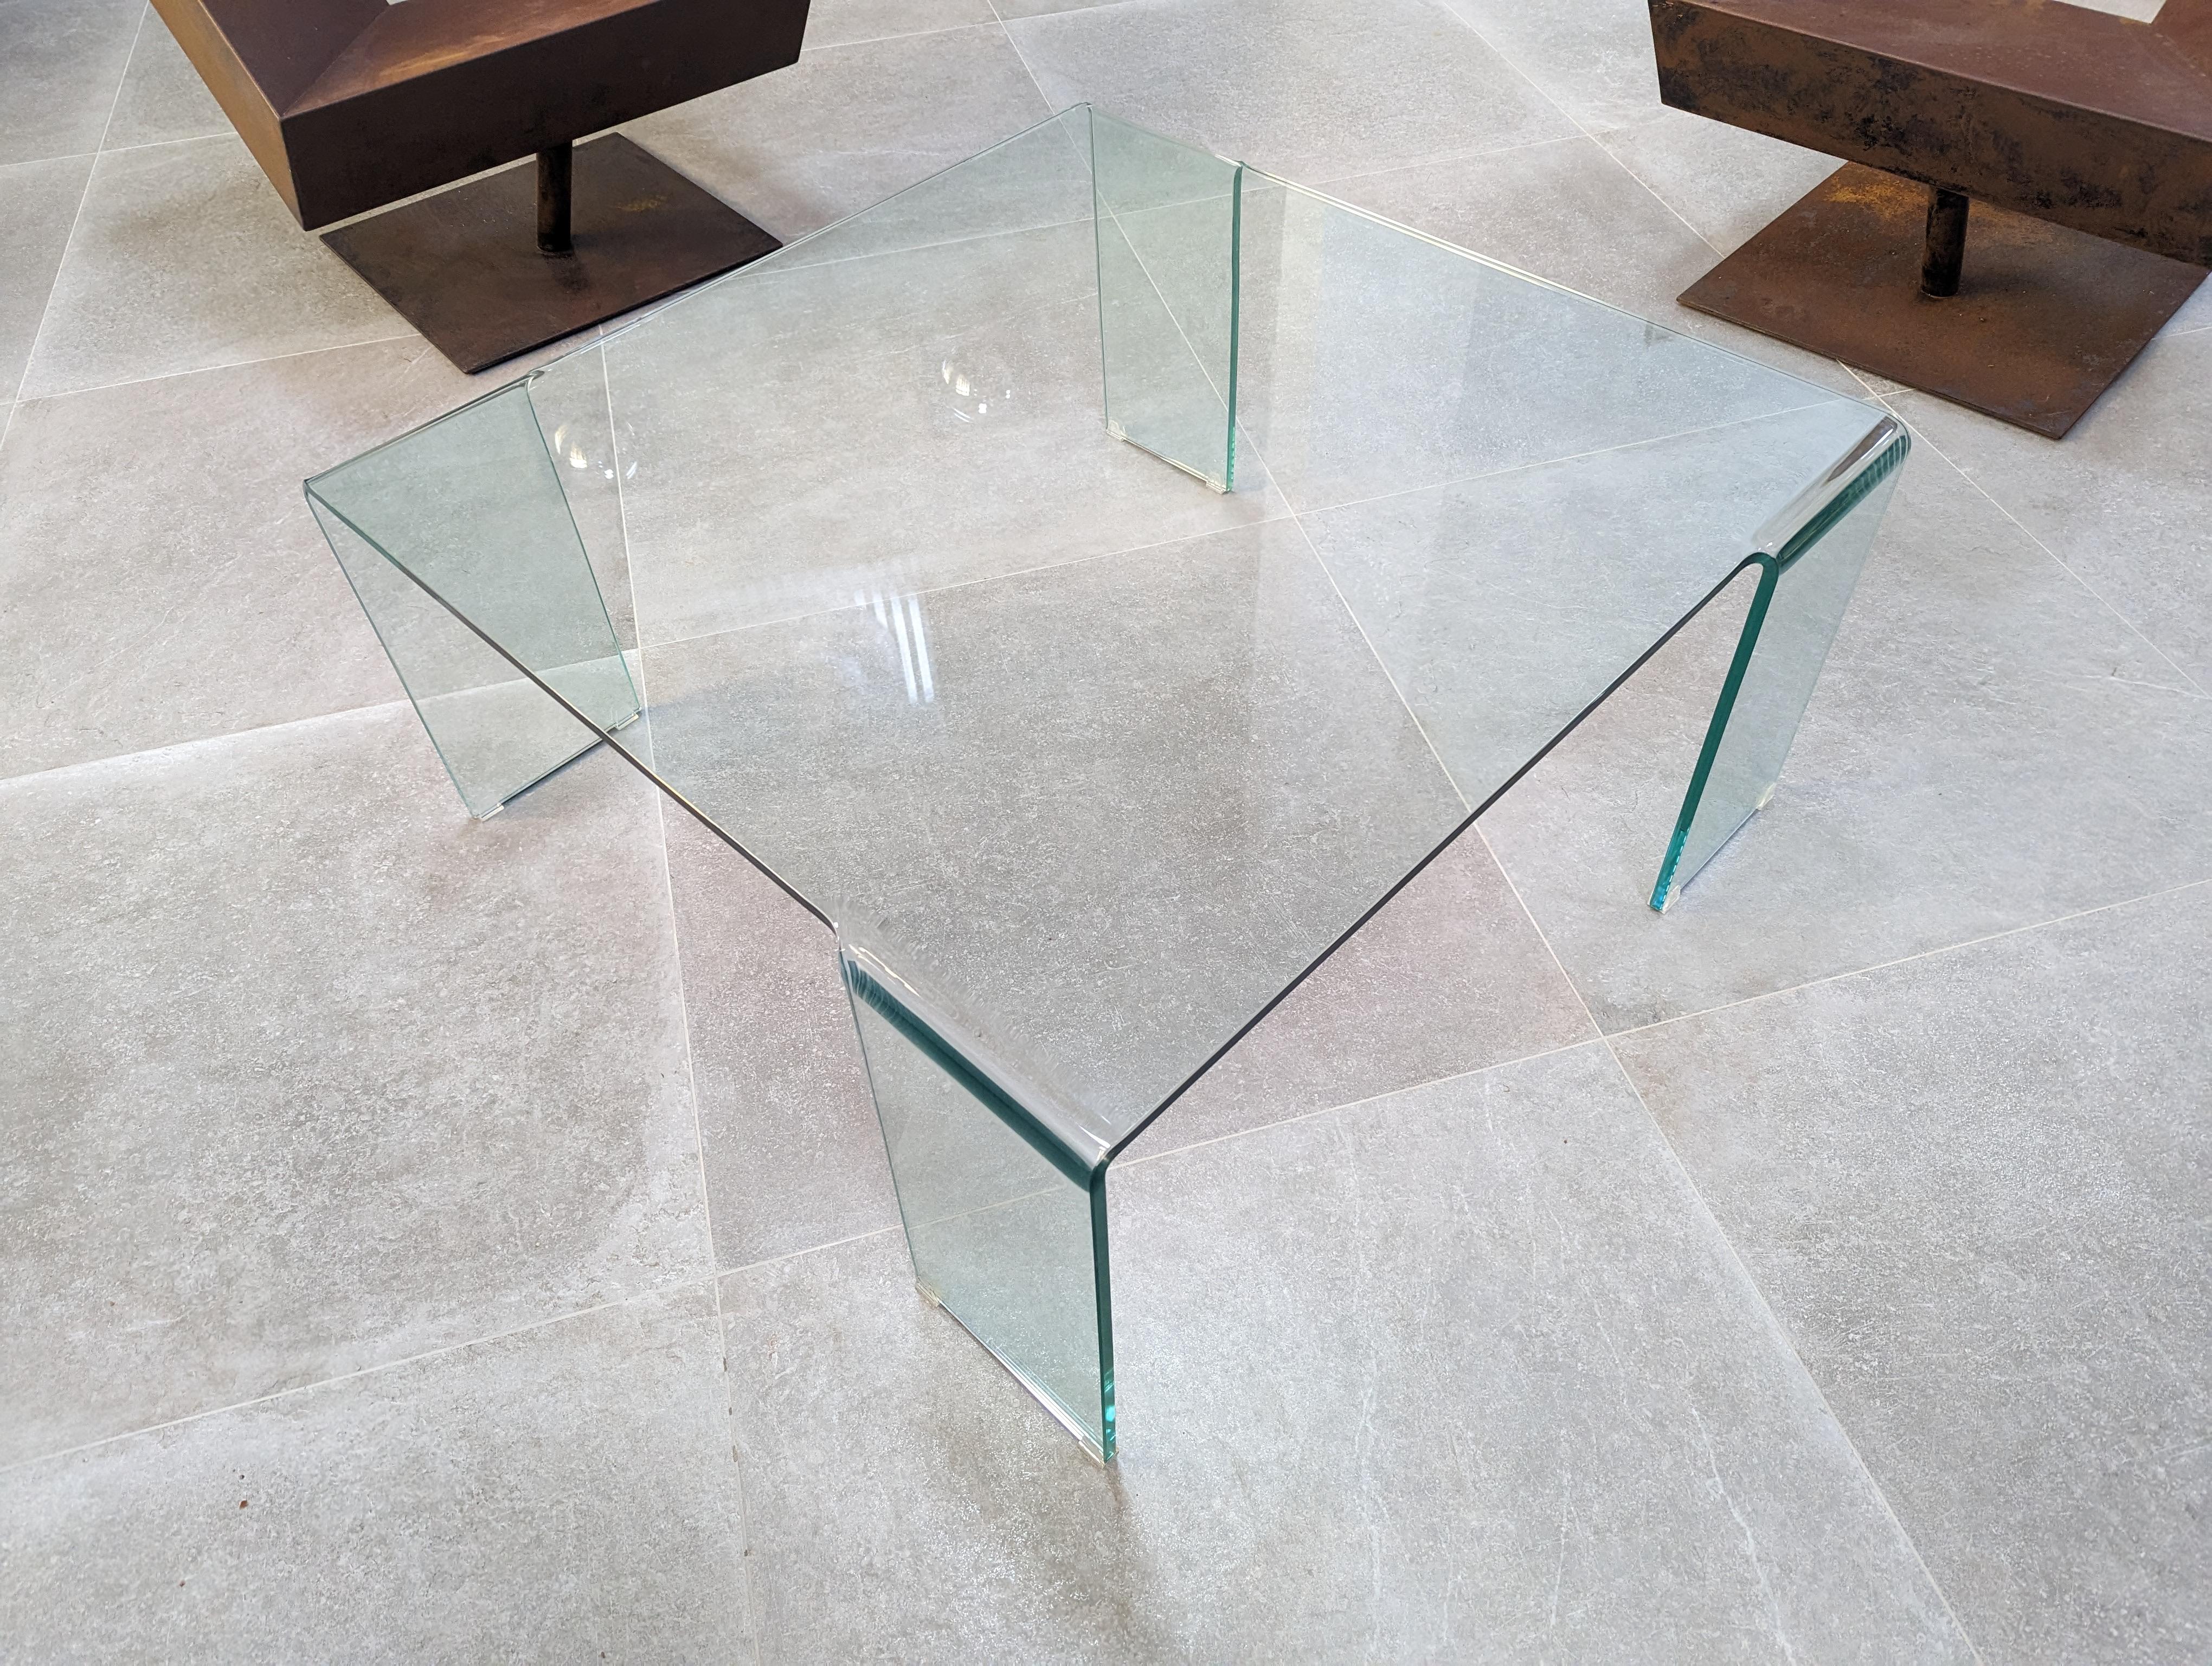 Eleganter Tisch aus gebogenem Glas nach dem berühmten Design des Neutra-Tisches von Rodolfo Dordoni für FIAM. Ein zeitloser Tisch, der zu allen Stilen und ROOMS passt und der gesamten Umgebung Platz und visuelles Licht verleiht.